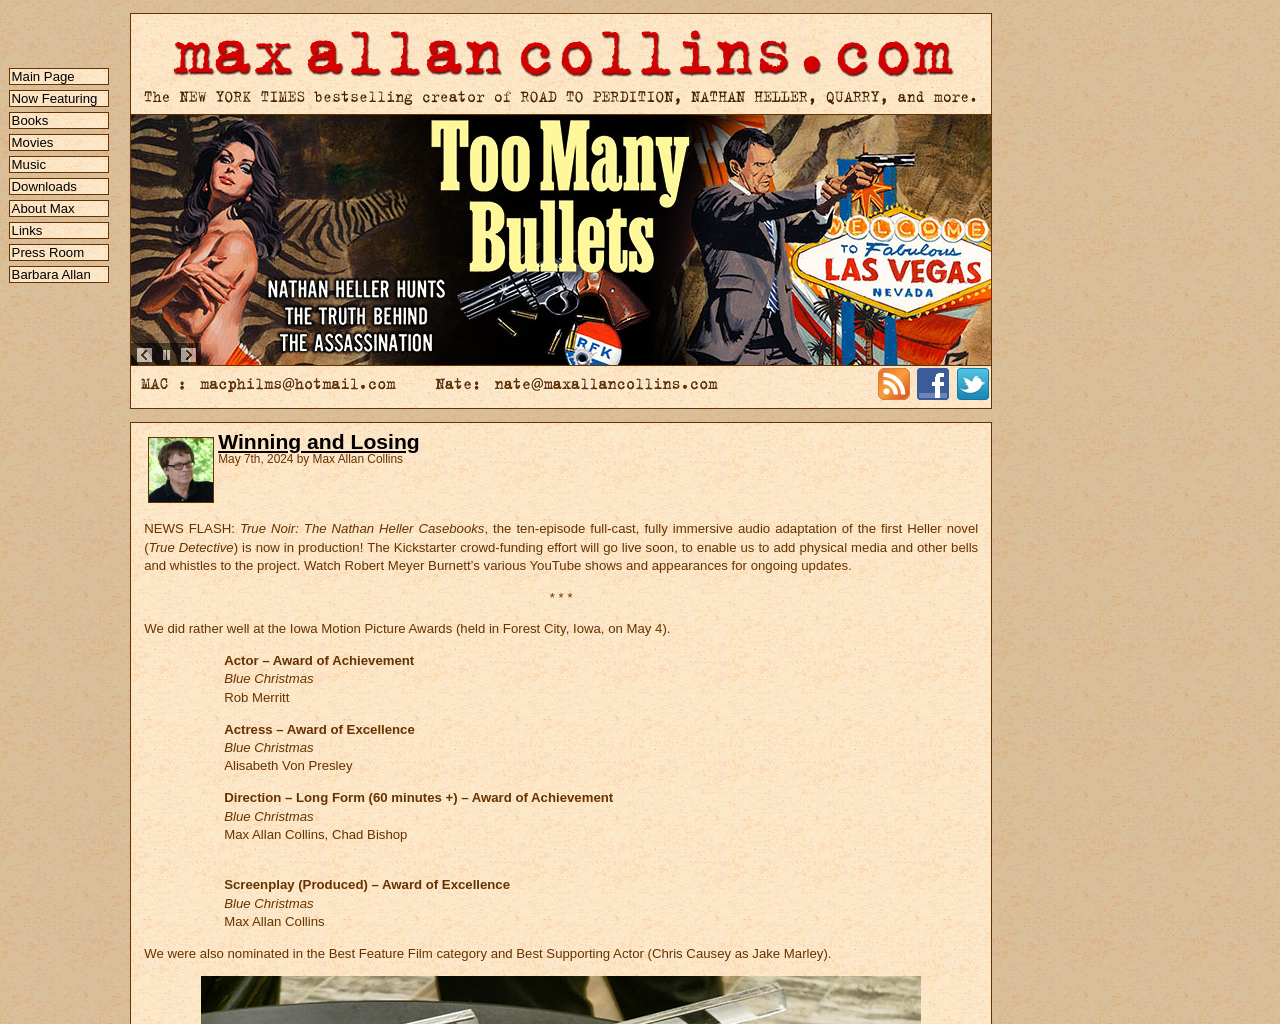 maxallancollins.com